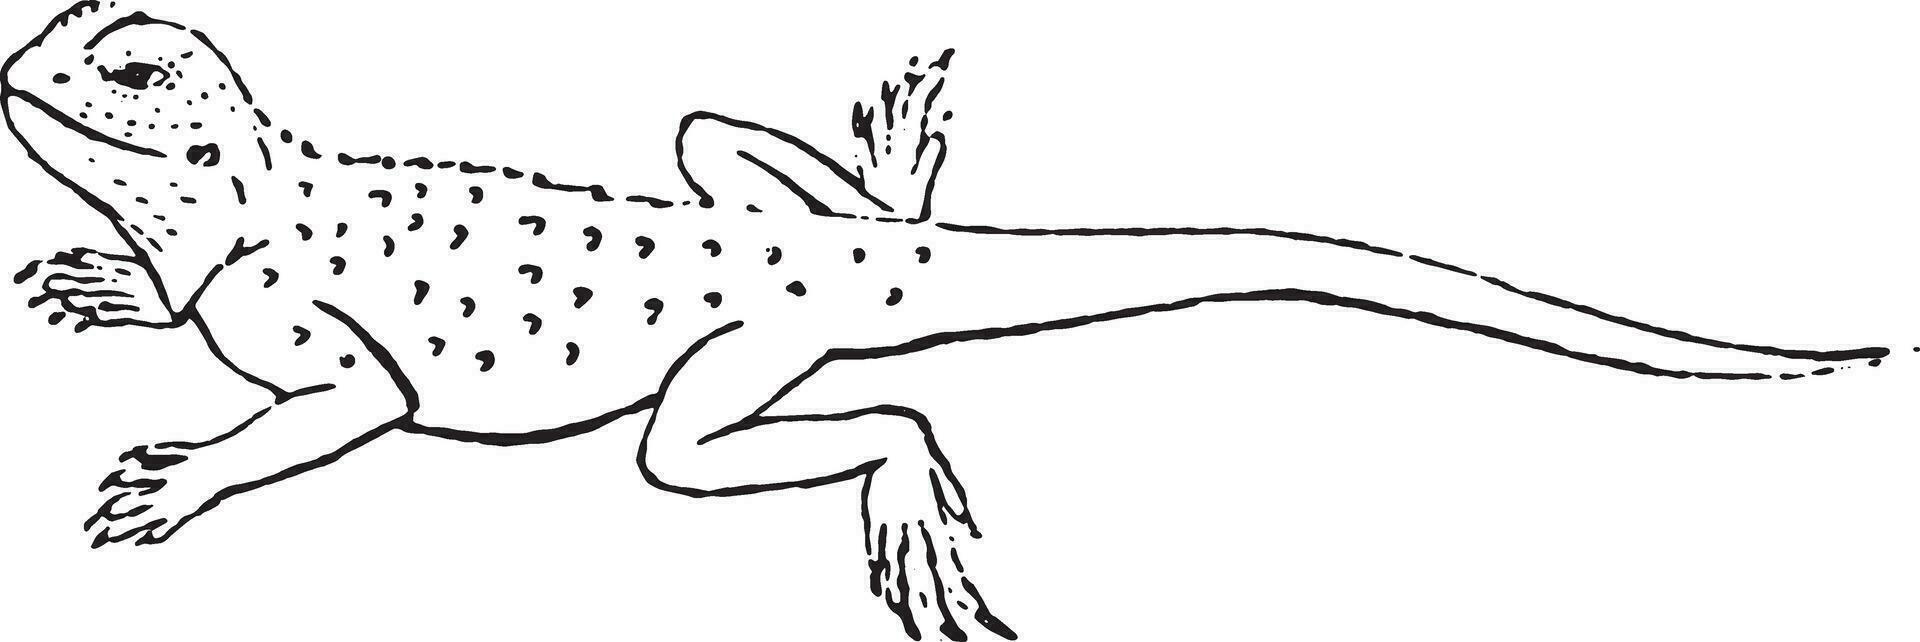 Agama lizard of the genus, vintage engraving. vector